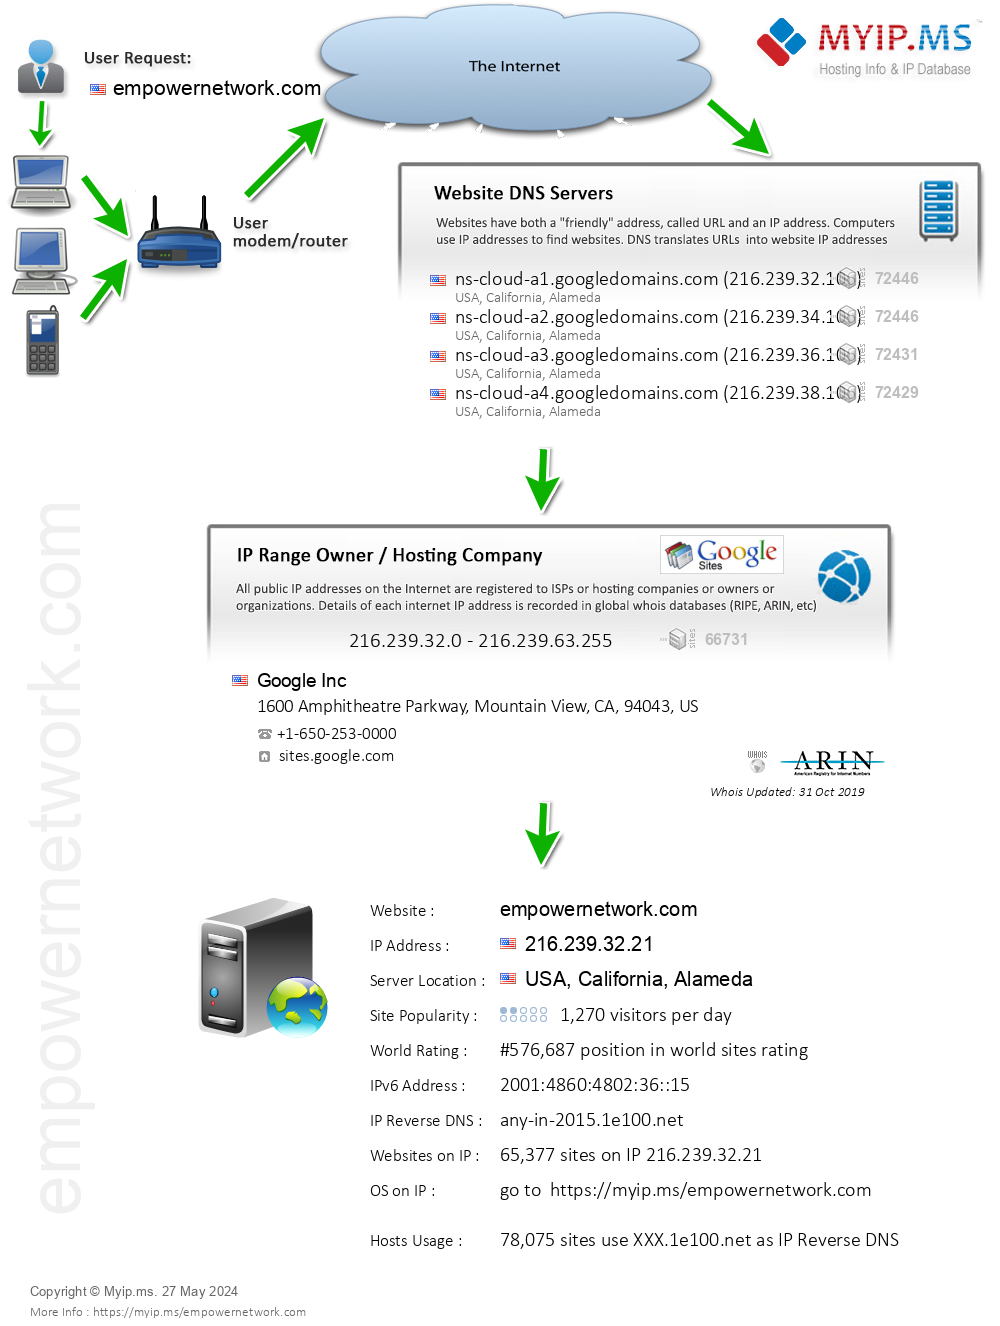 Empowernetwork.com - Website Hosting Visual IP Diagram